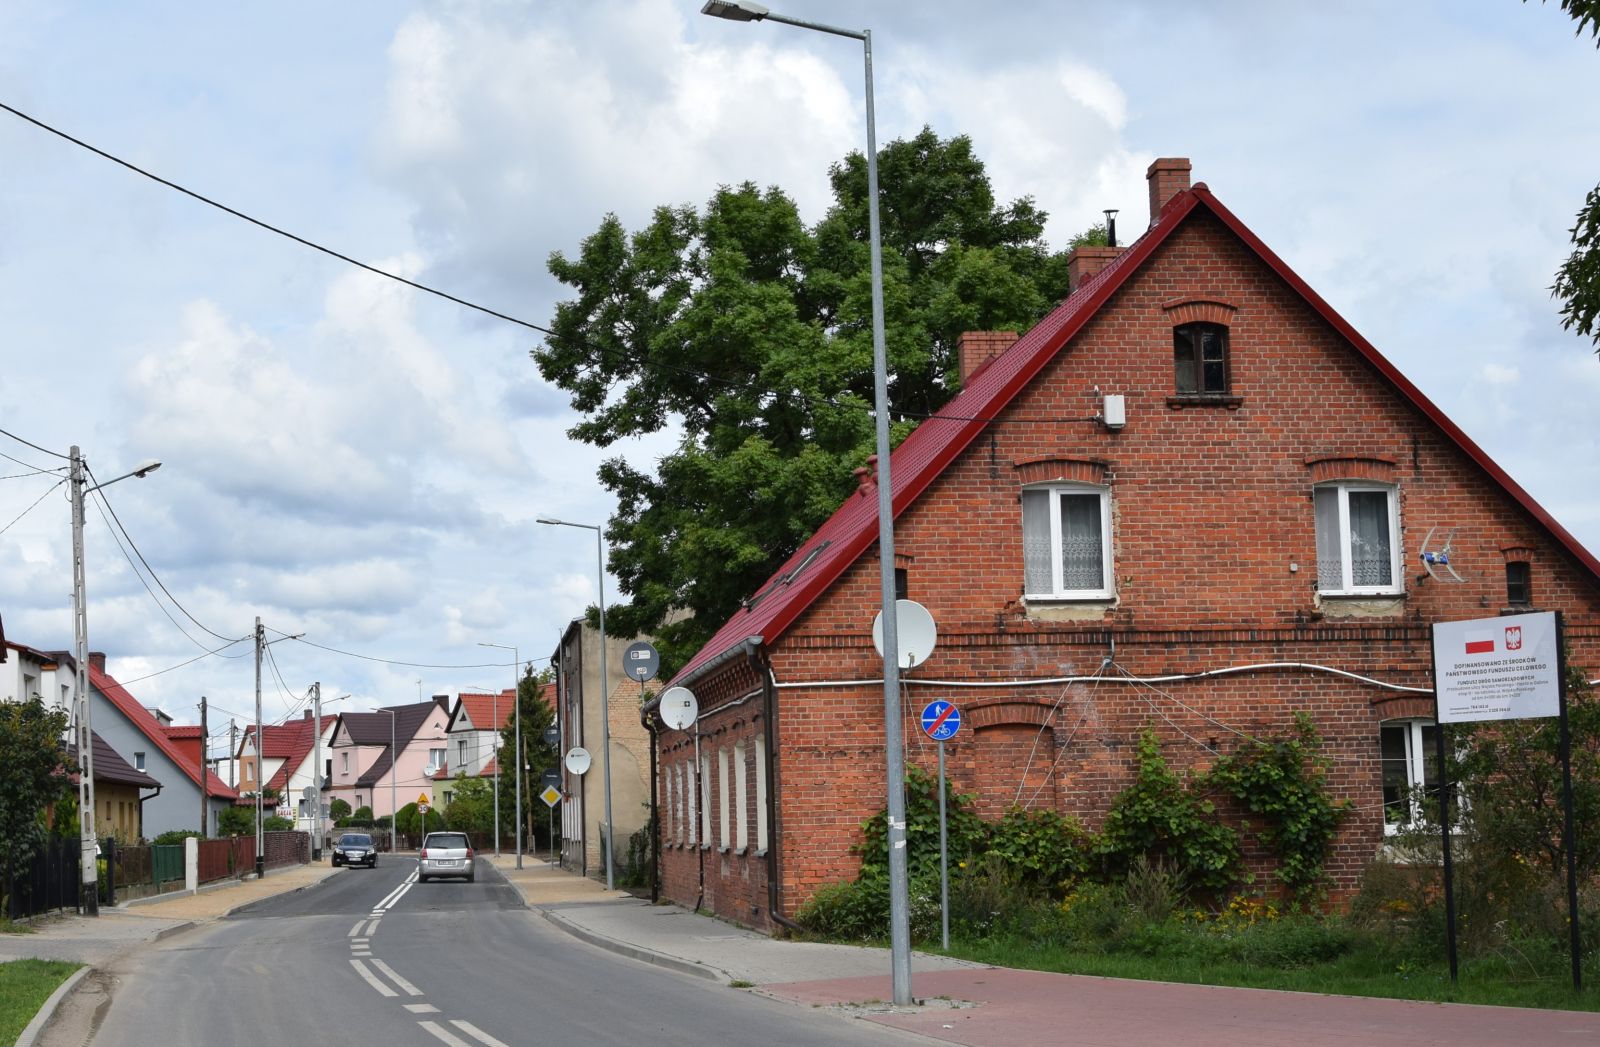 Ulica Wojska Polskiego. Niebo, jezdnia, lampy, domy